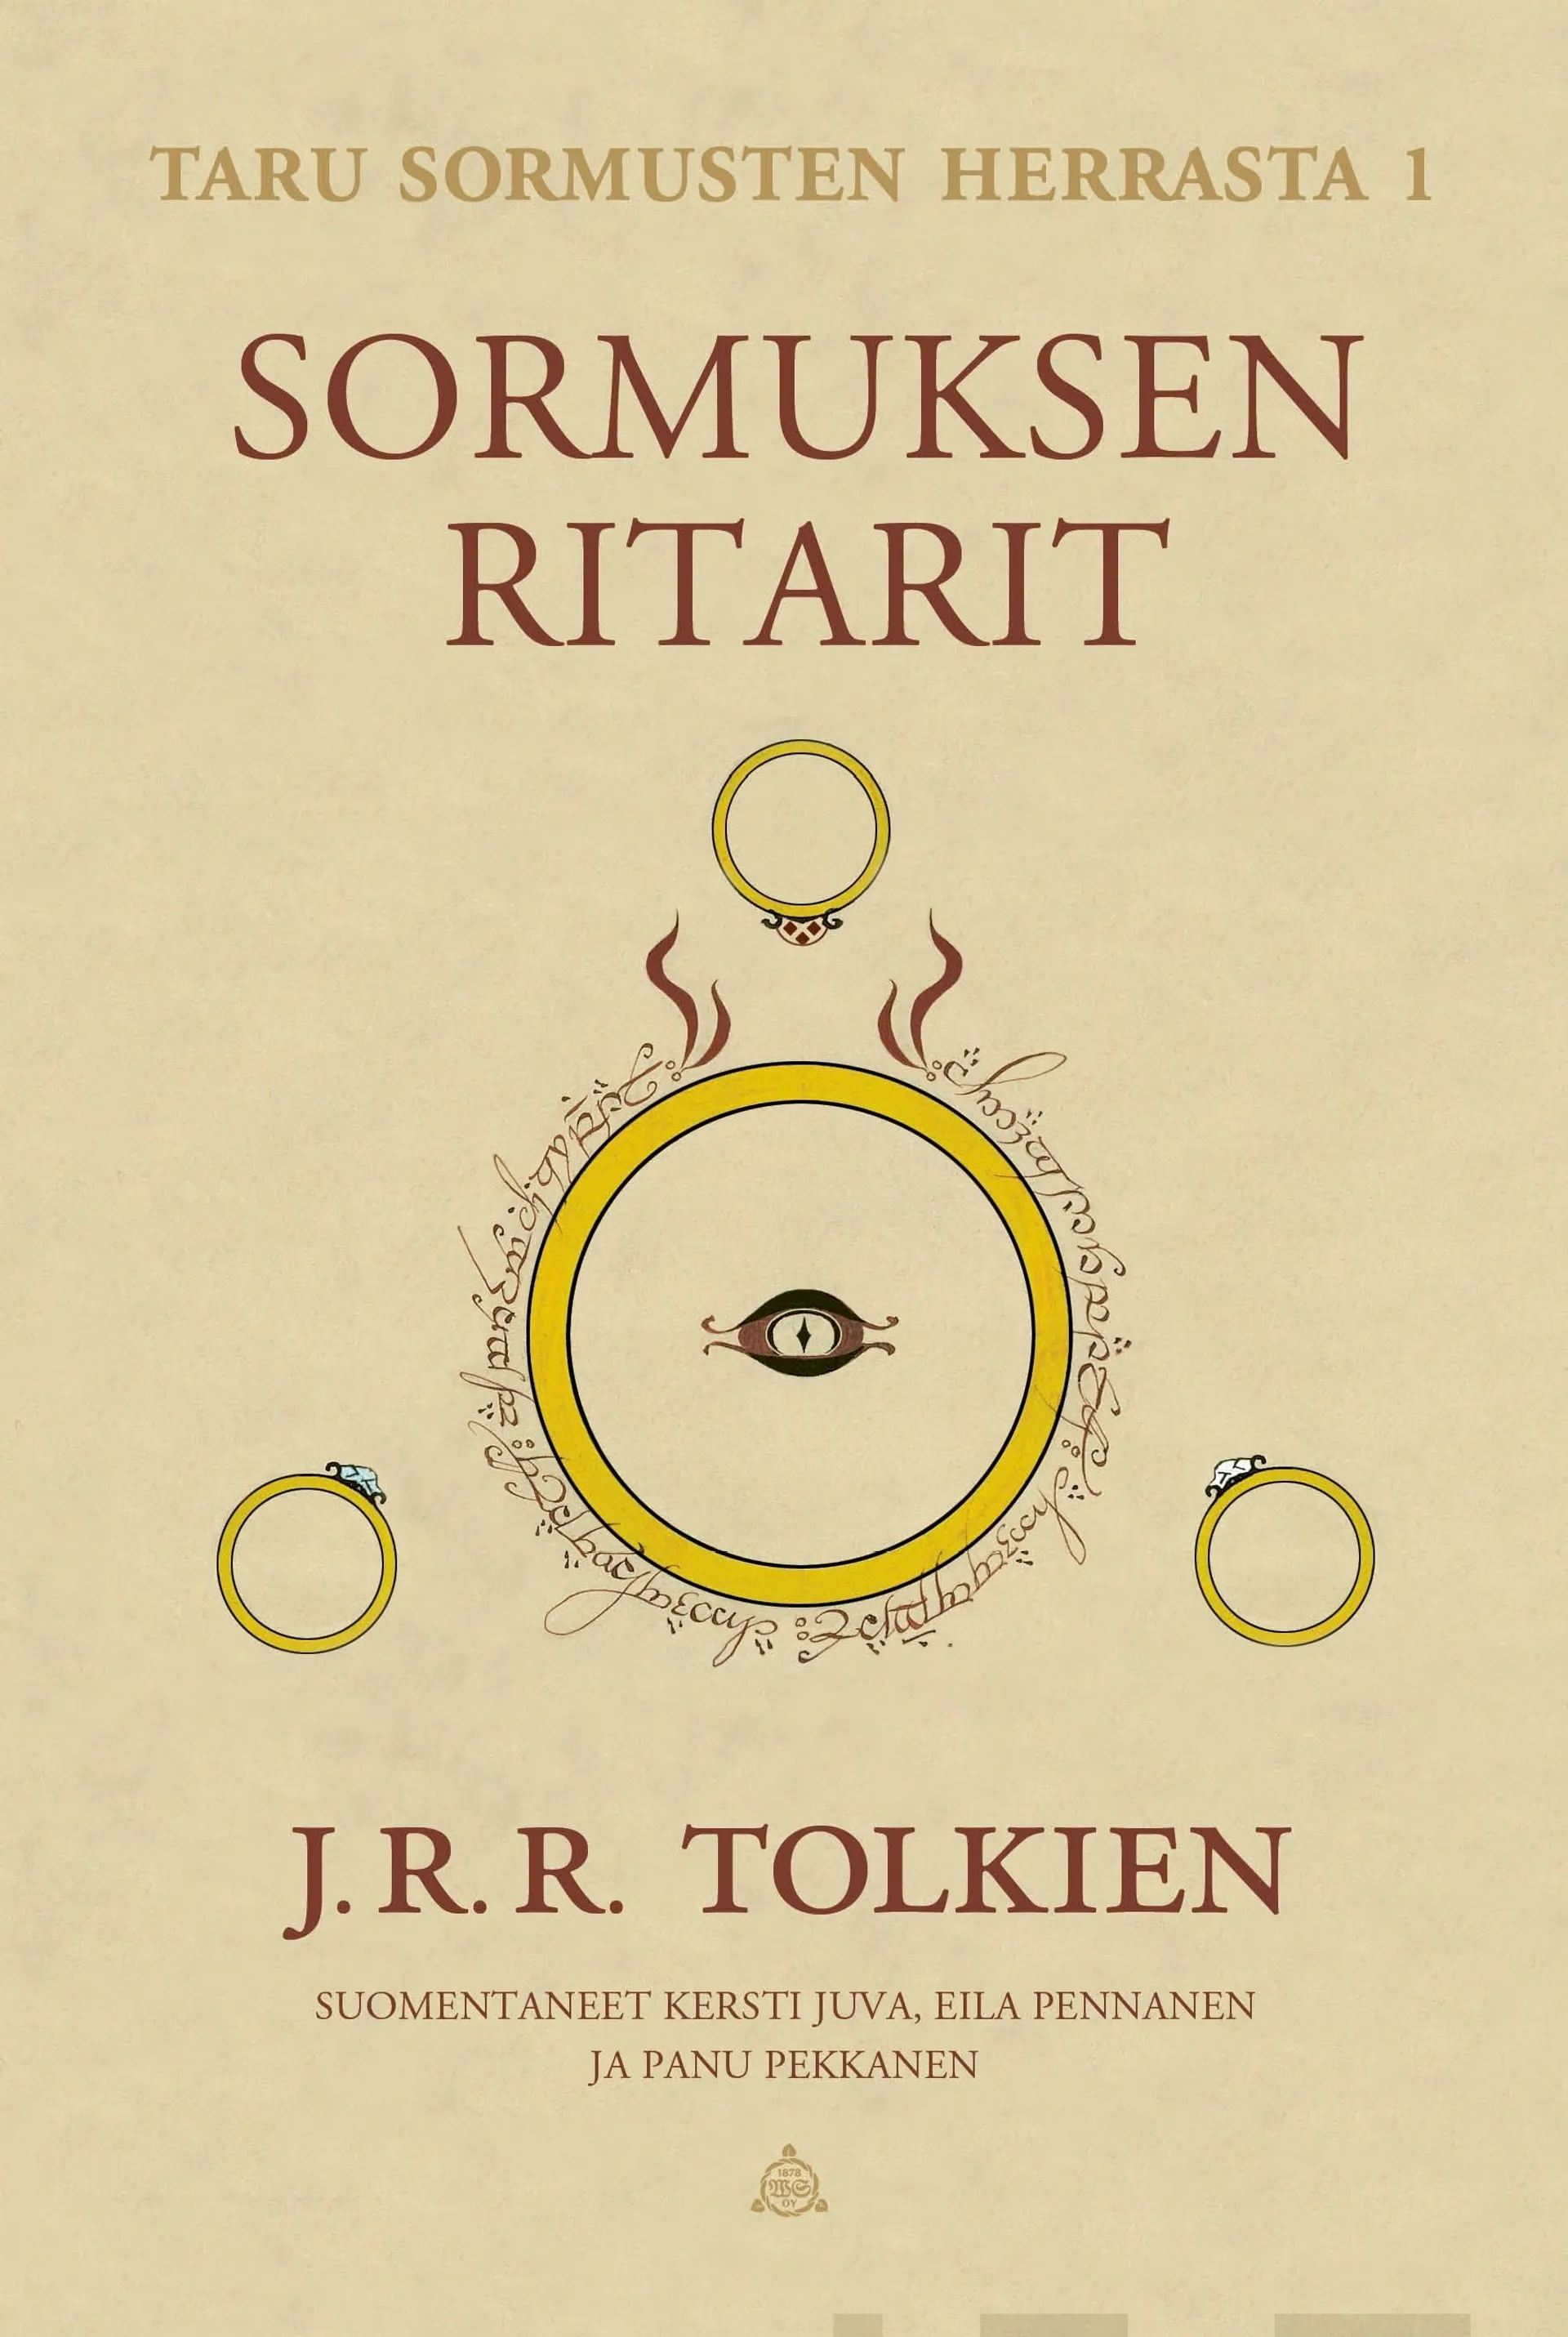 Tolkien, Taru Sormusten herrasta 1: Sormuksen ritarit (tarkistettu suomennos)